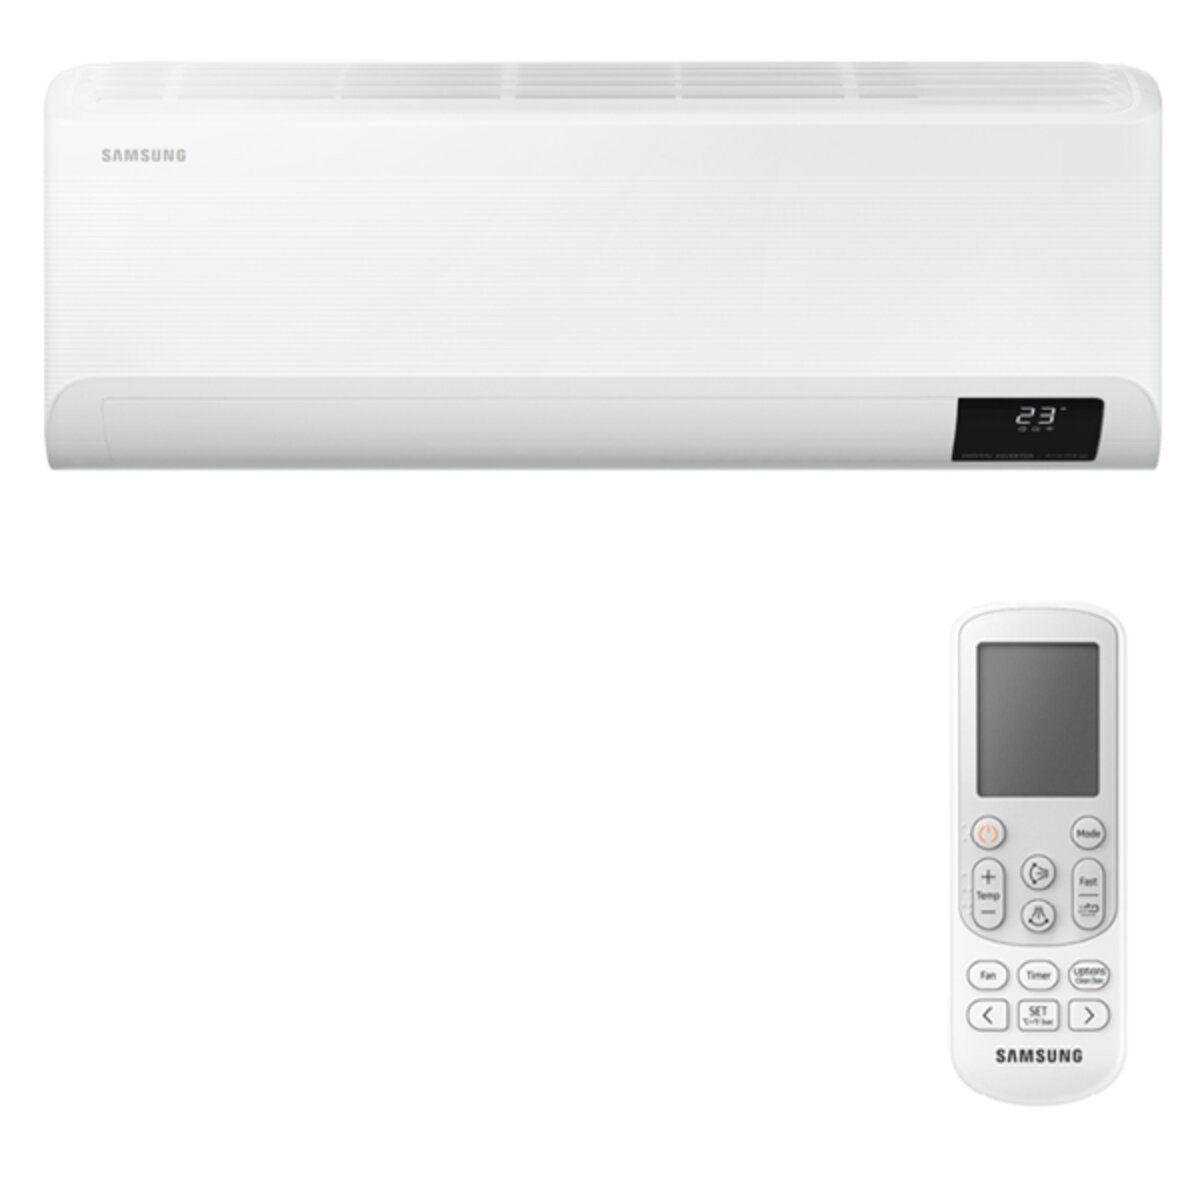 Samsung Cebu WLAN Klimaanlage Penta Split 7000 + 7000 + 9000 + 9000 + 9000 BTU Wechselrichter A++ WLAN Außengerät 10,0 kW